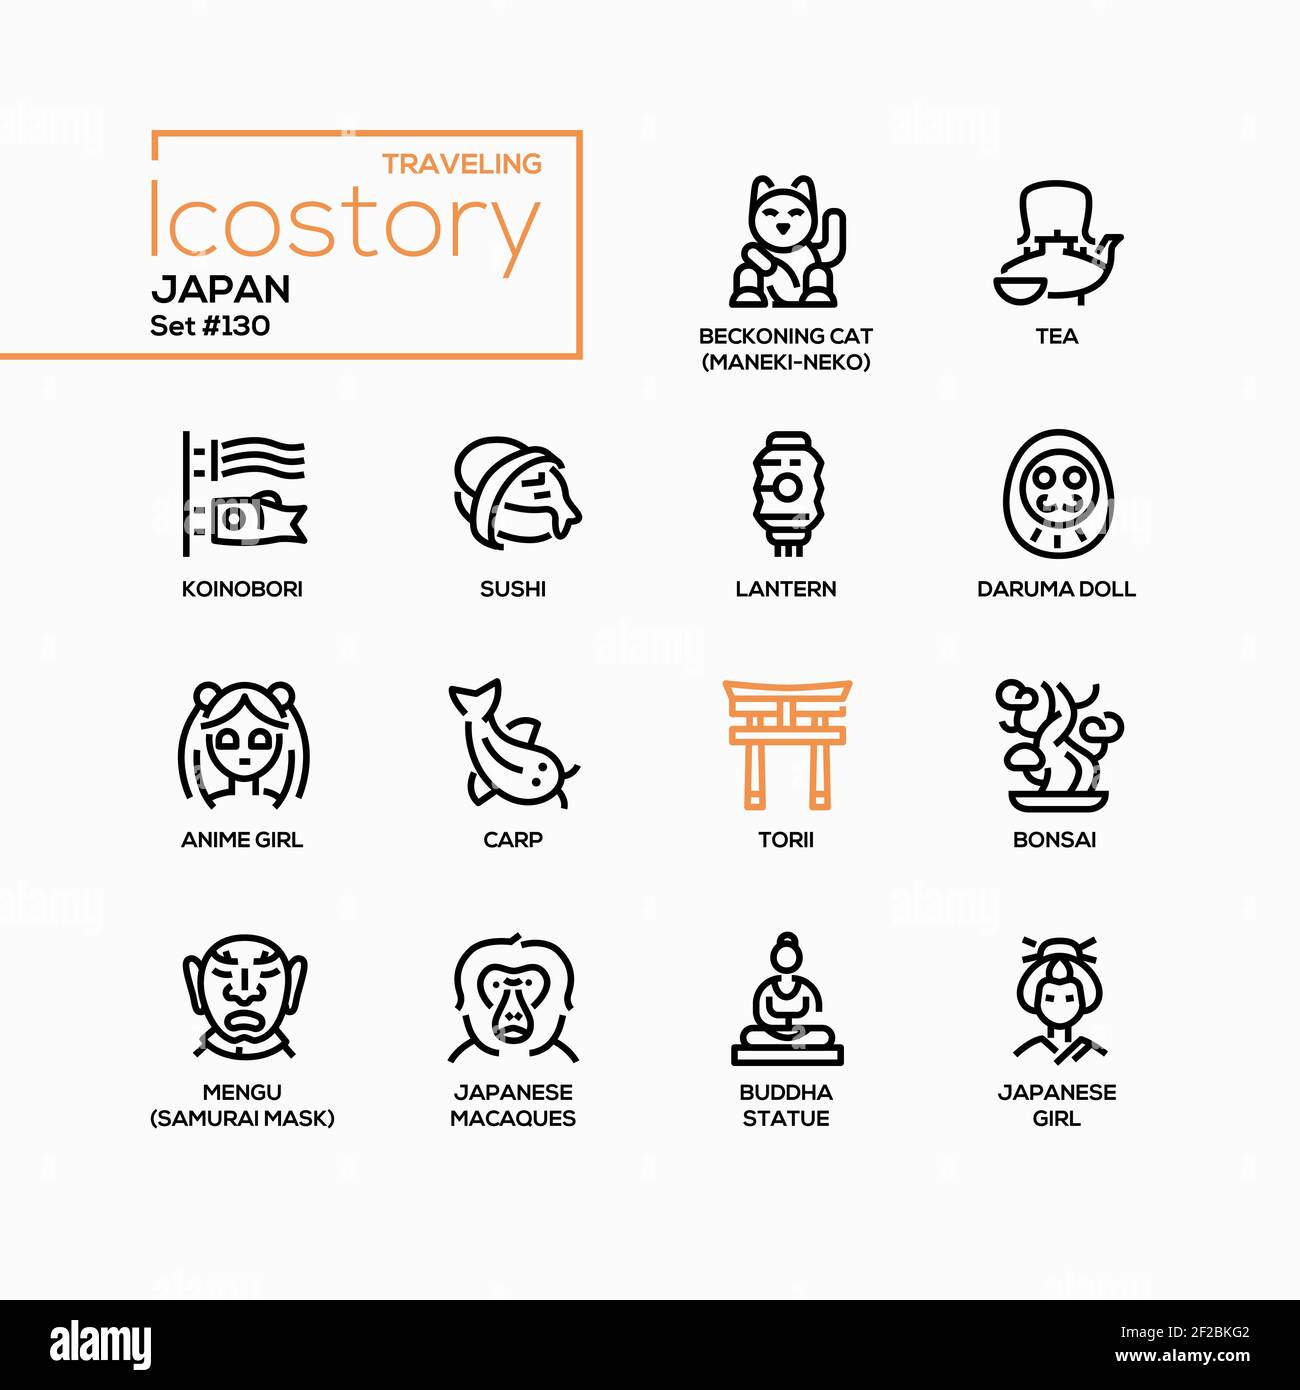 Giappone - Set di icone di stile moderno. Simboli e tradizioni nazionali giapponesi. Immagini di koinobori, sushi, lanterna, bambola Daruma, anime, circa Illustrazione Vettoriale